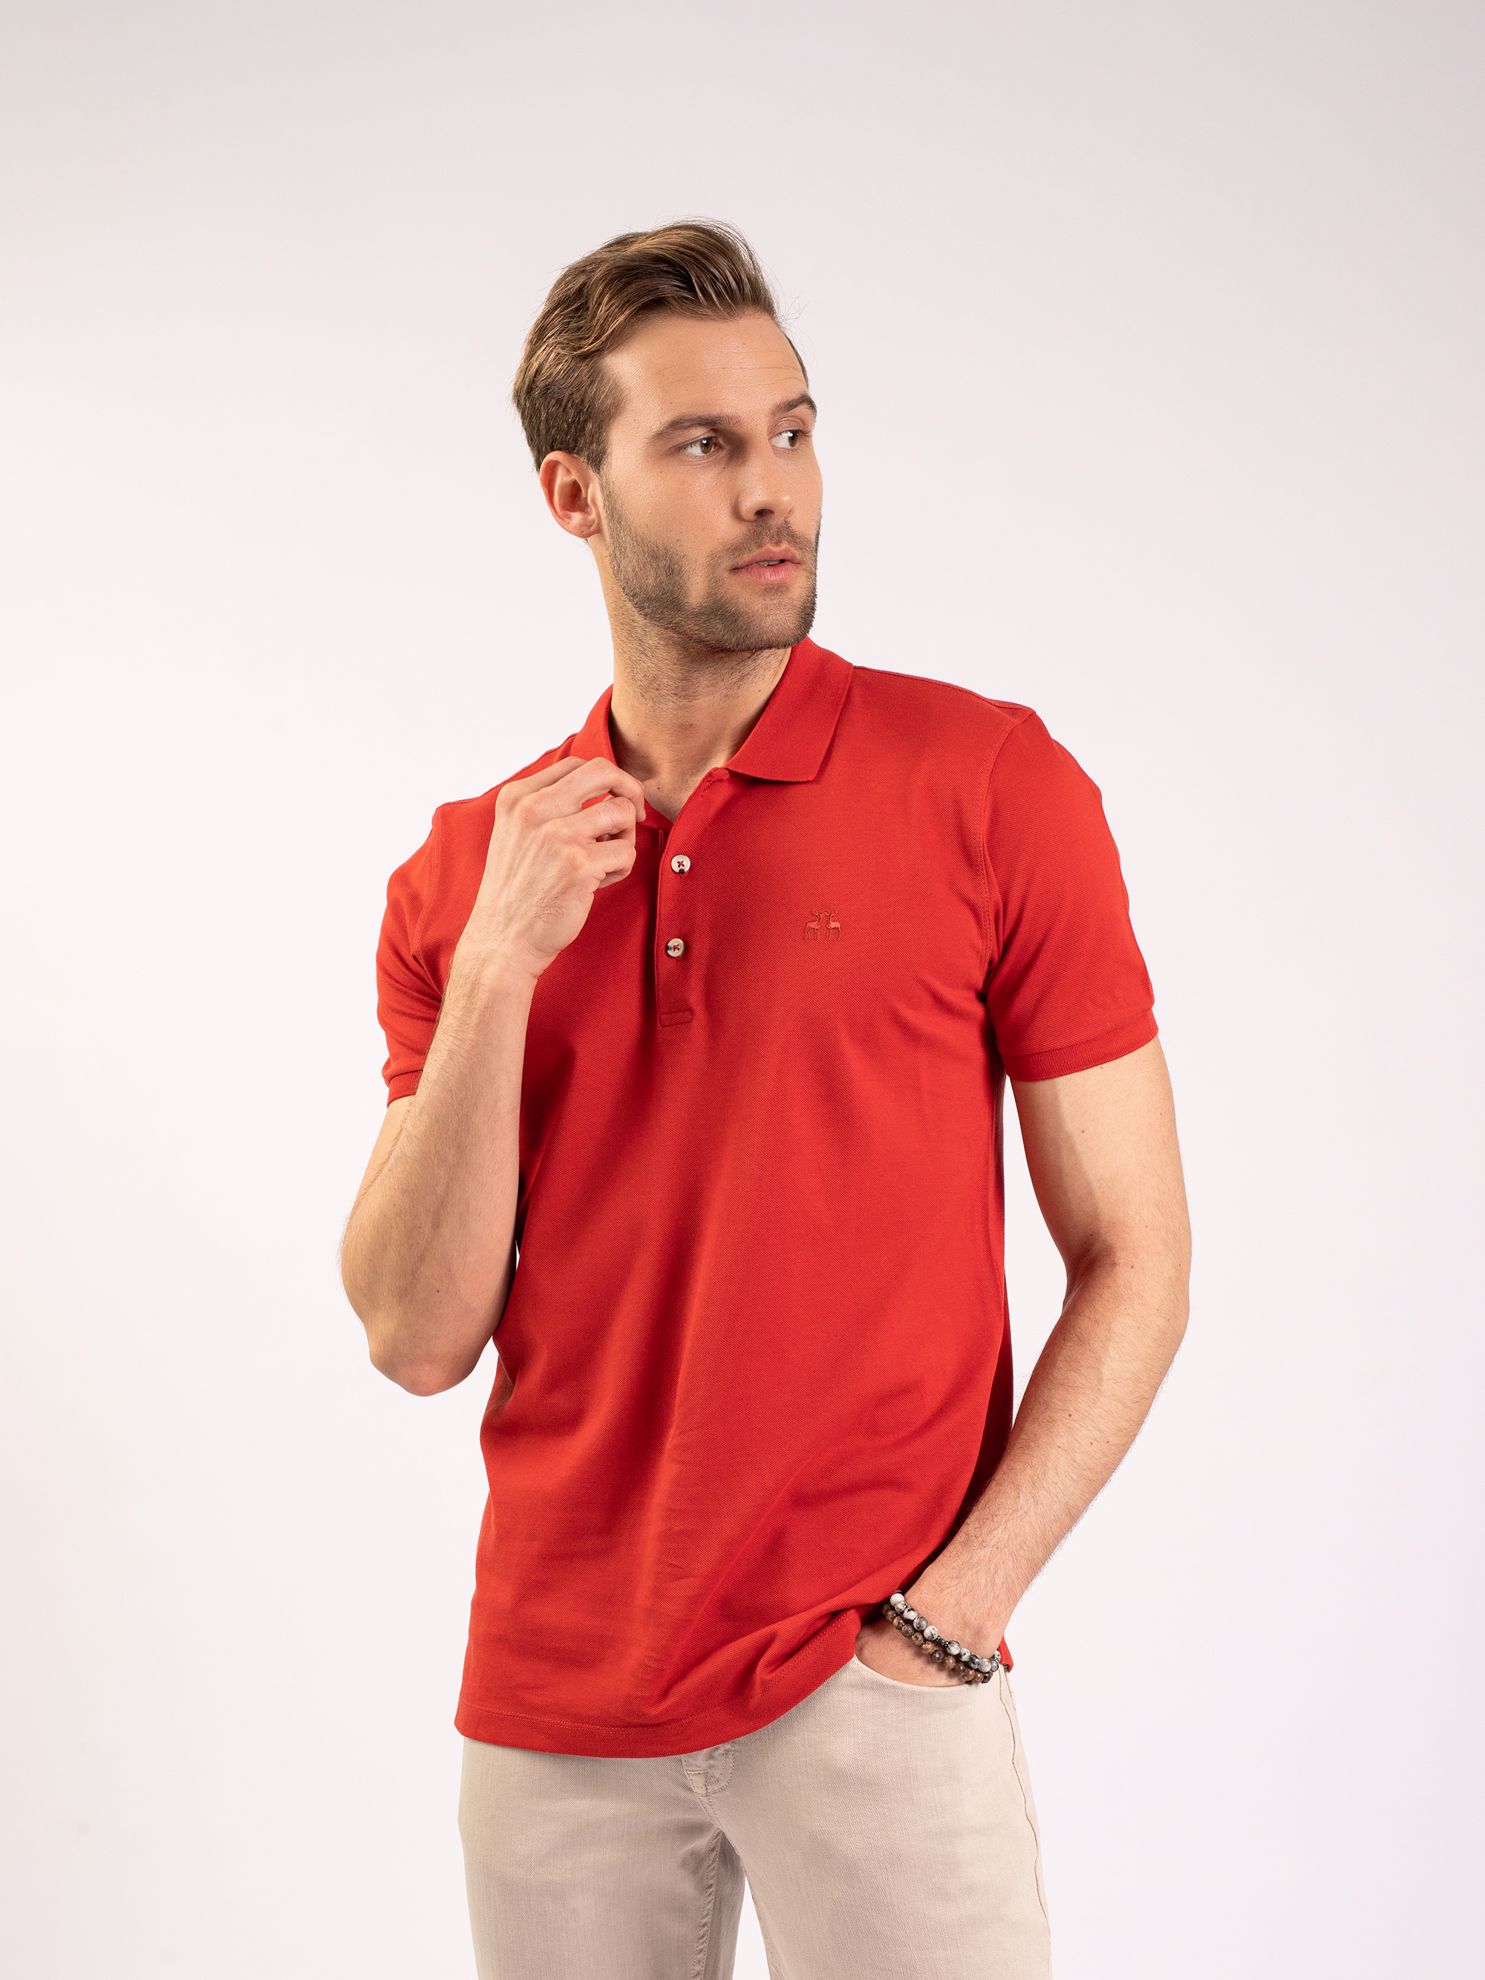 Karaca Erkek Slim Fit Polo Yaka Tişört-Kiremit. ürün görseli